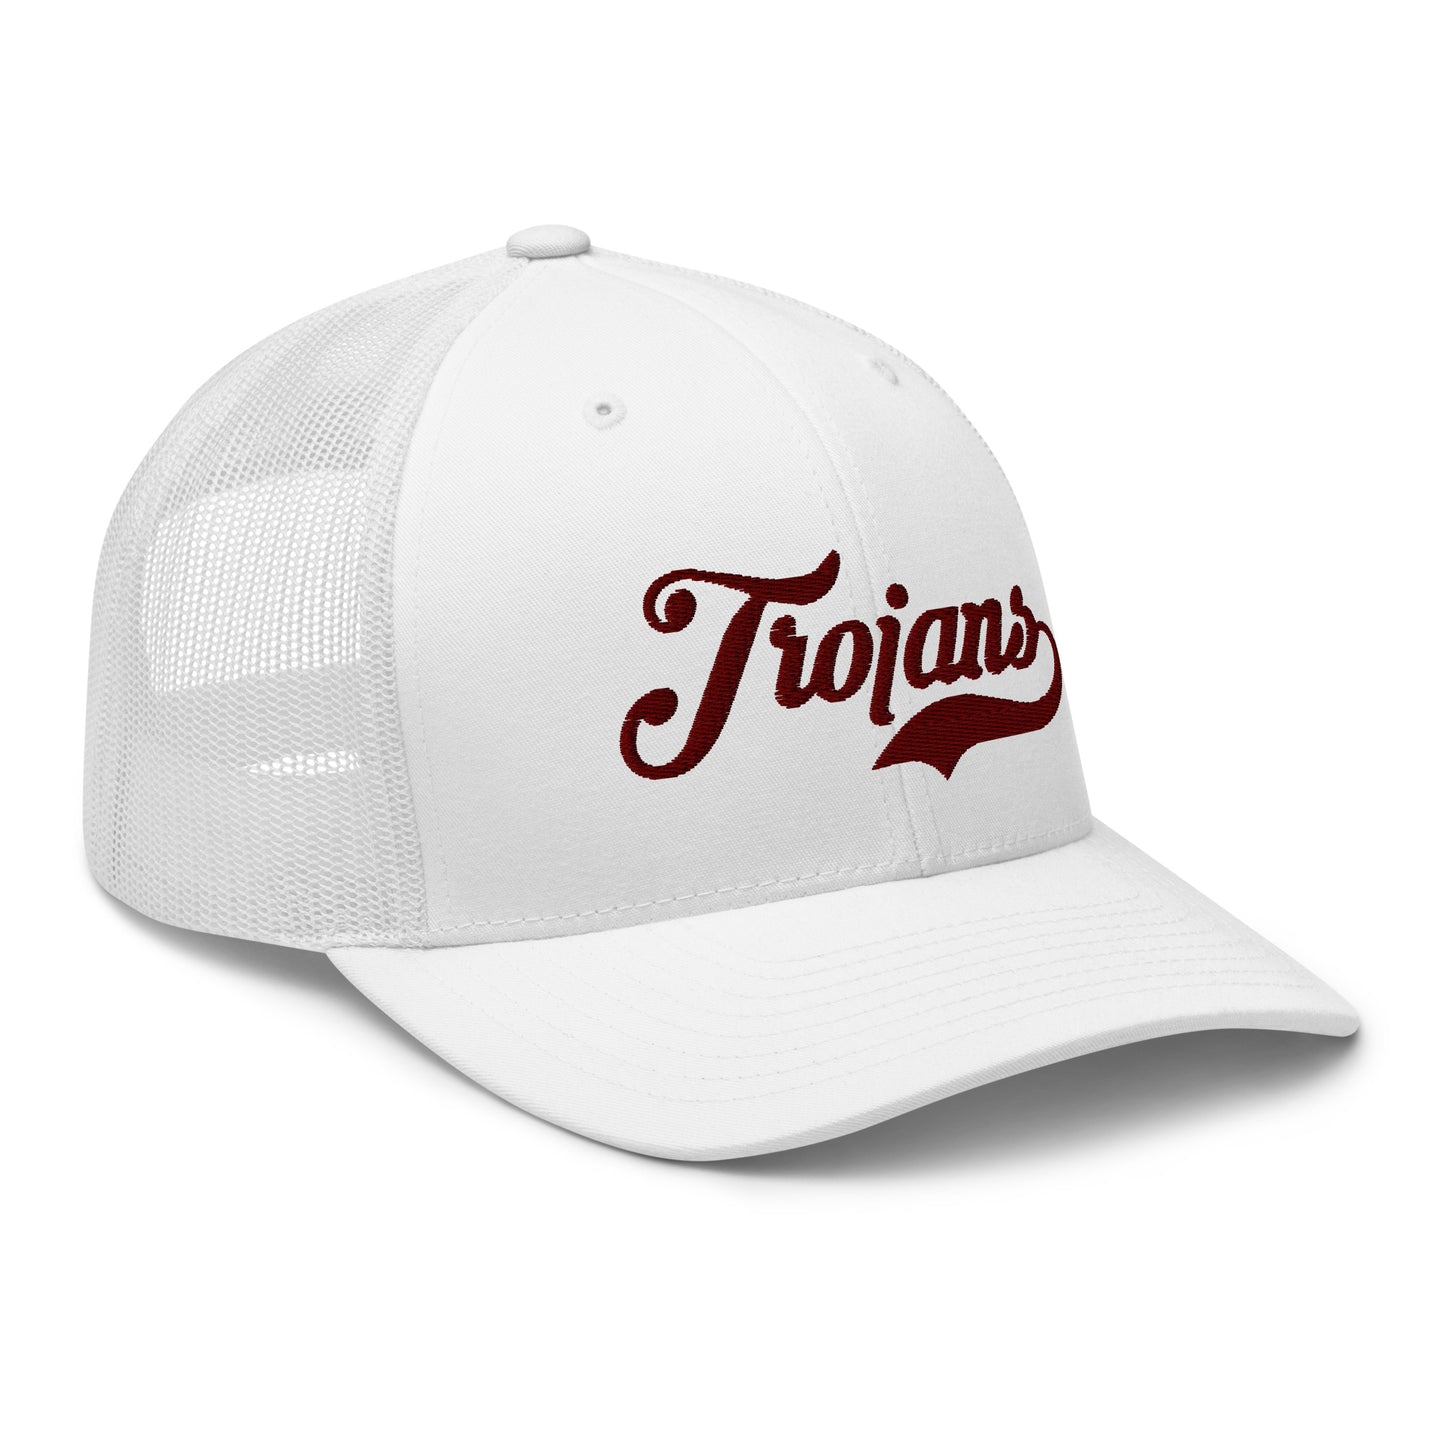 Trojans Mesh Baseball Cap